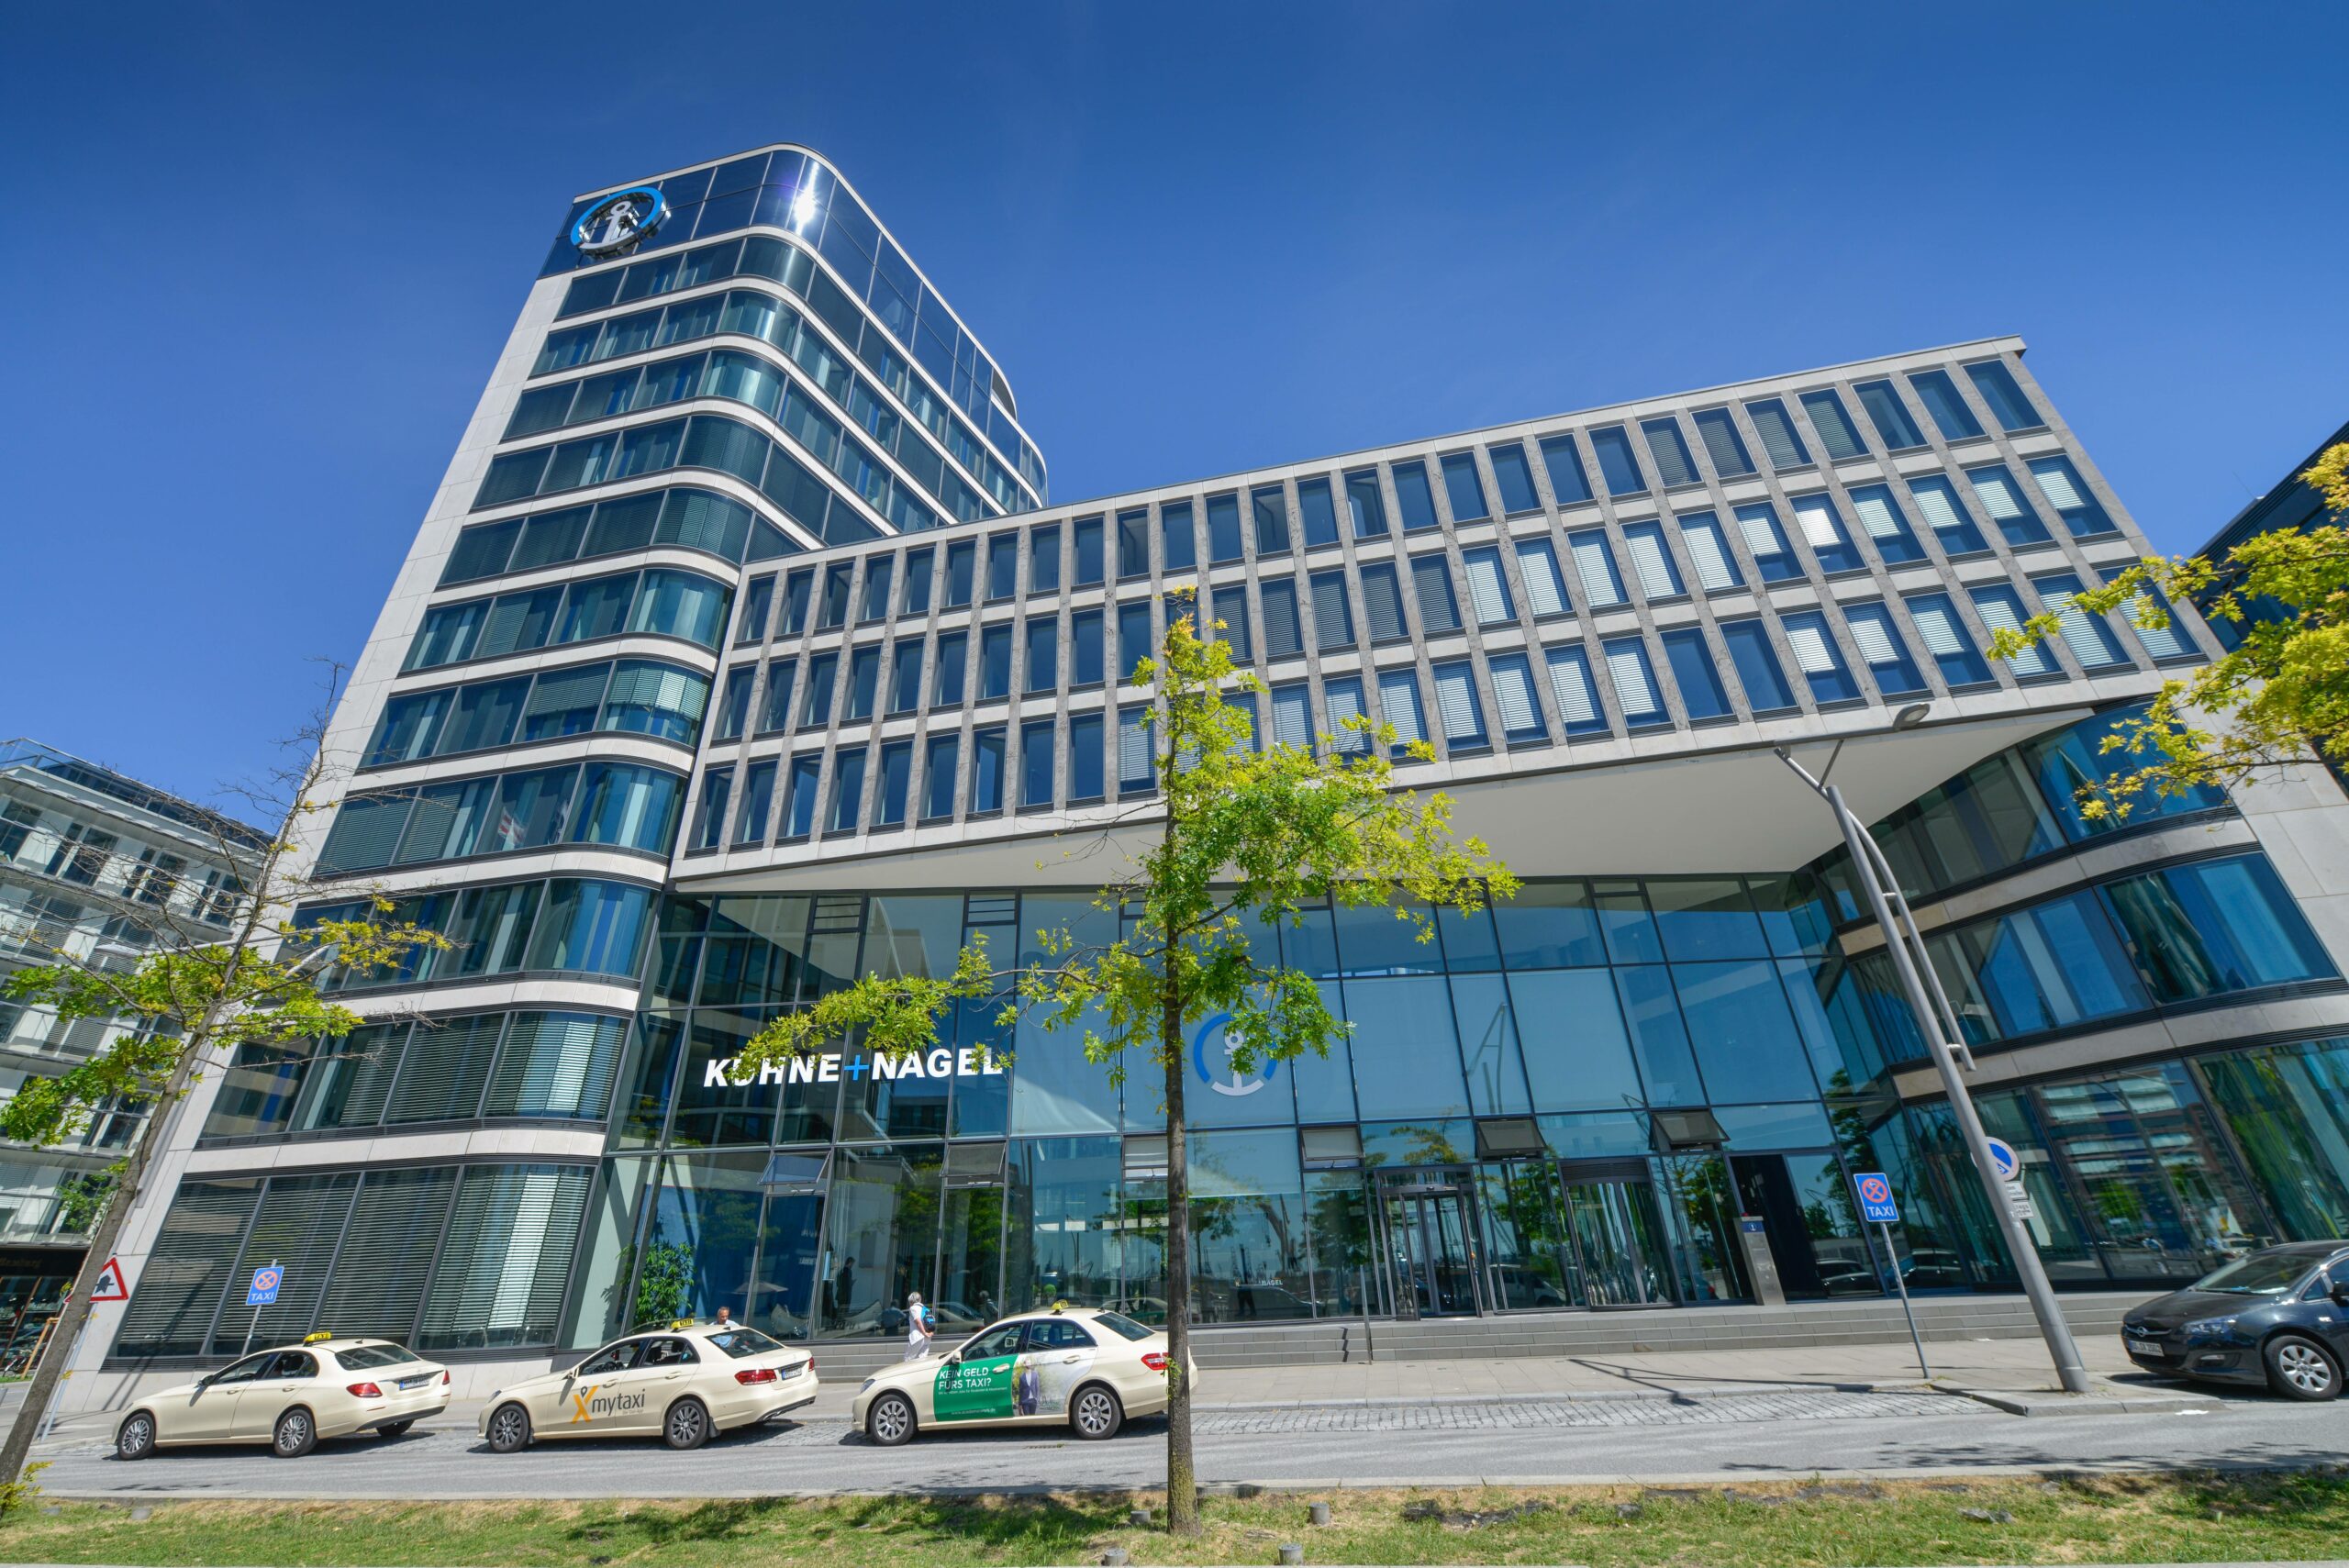 Der Firmensitz von Kühne + Nagel in der Hamburger HafenCity.